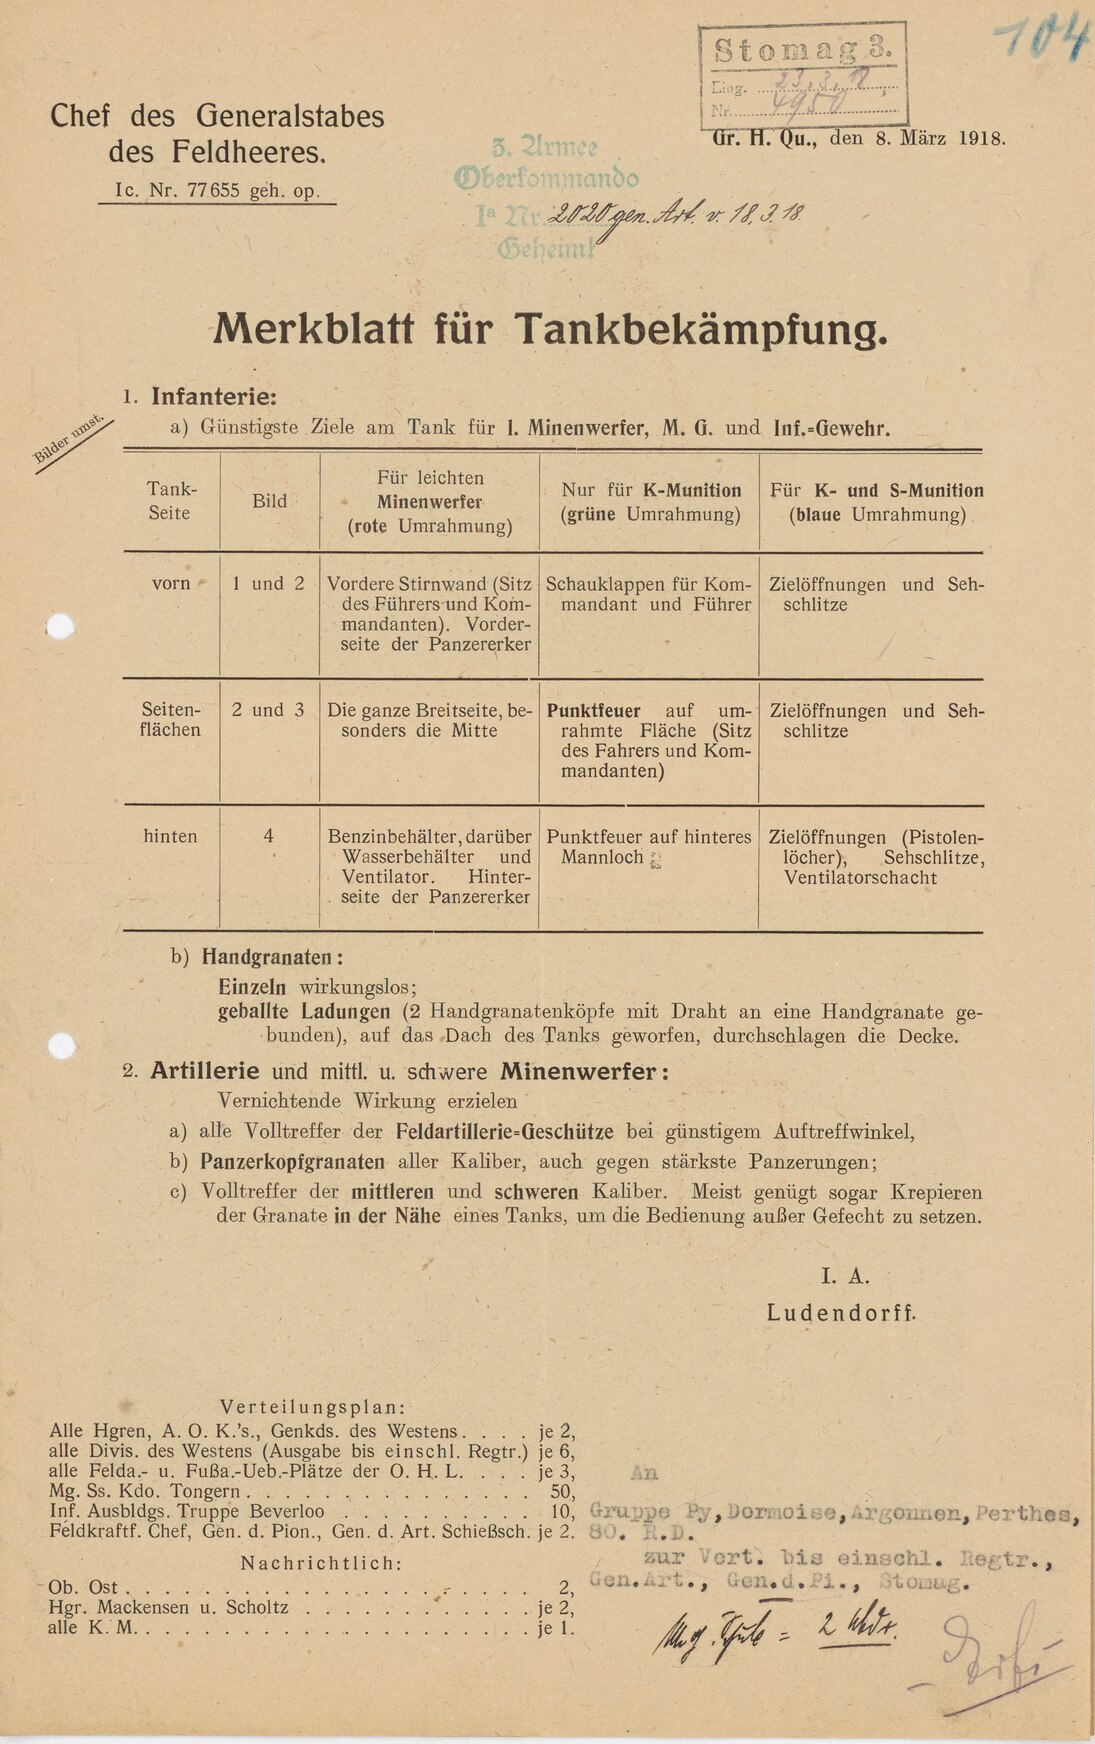 Merkblatt für die Tankbekämpfung von 1918